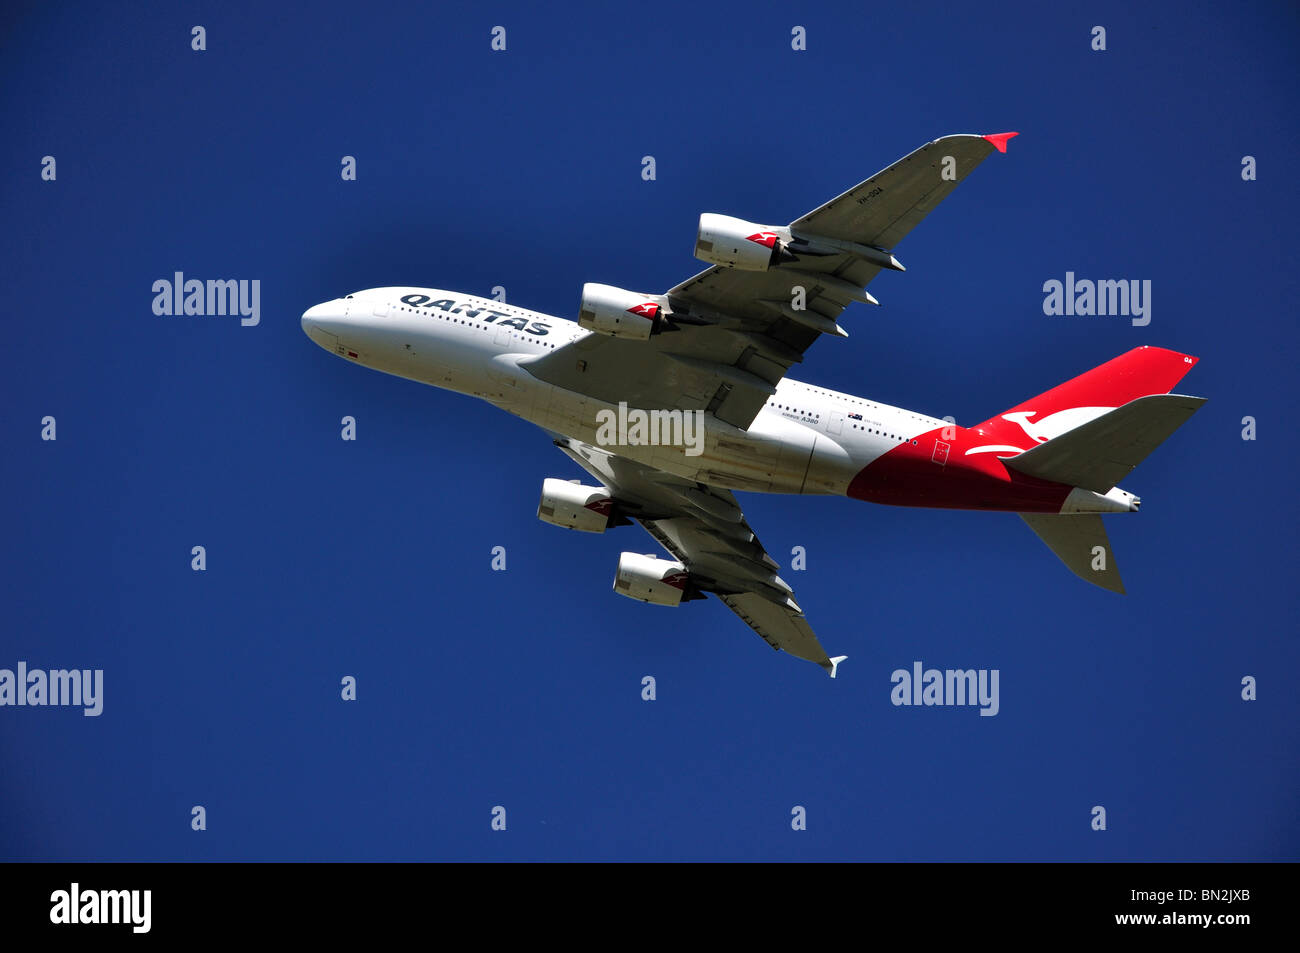 Qantas Airlines Airbus A380 décollant de l'aéroport de Heathrow, Londres, London, Angleterre, Royaume-Uni Banque D'Images